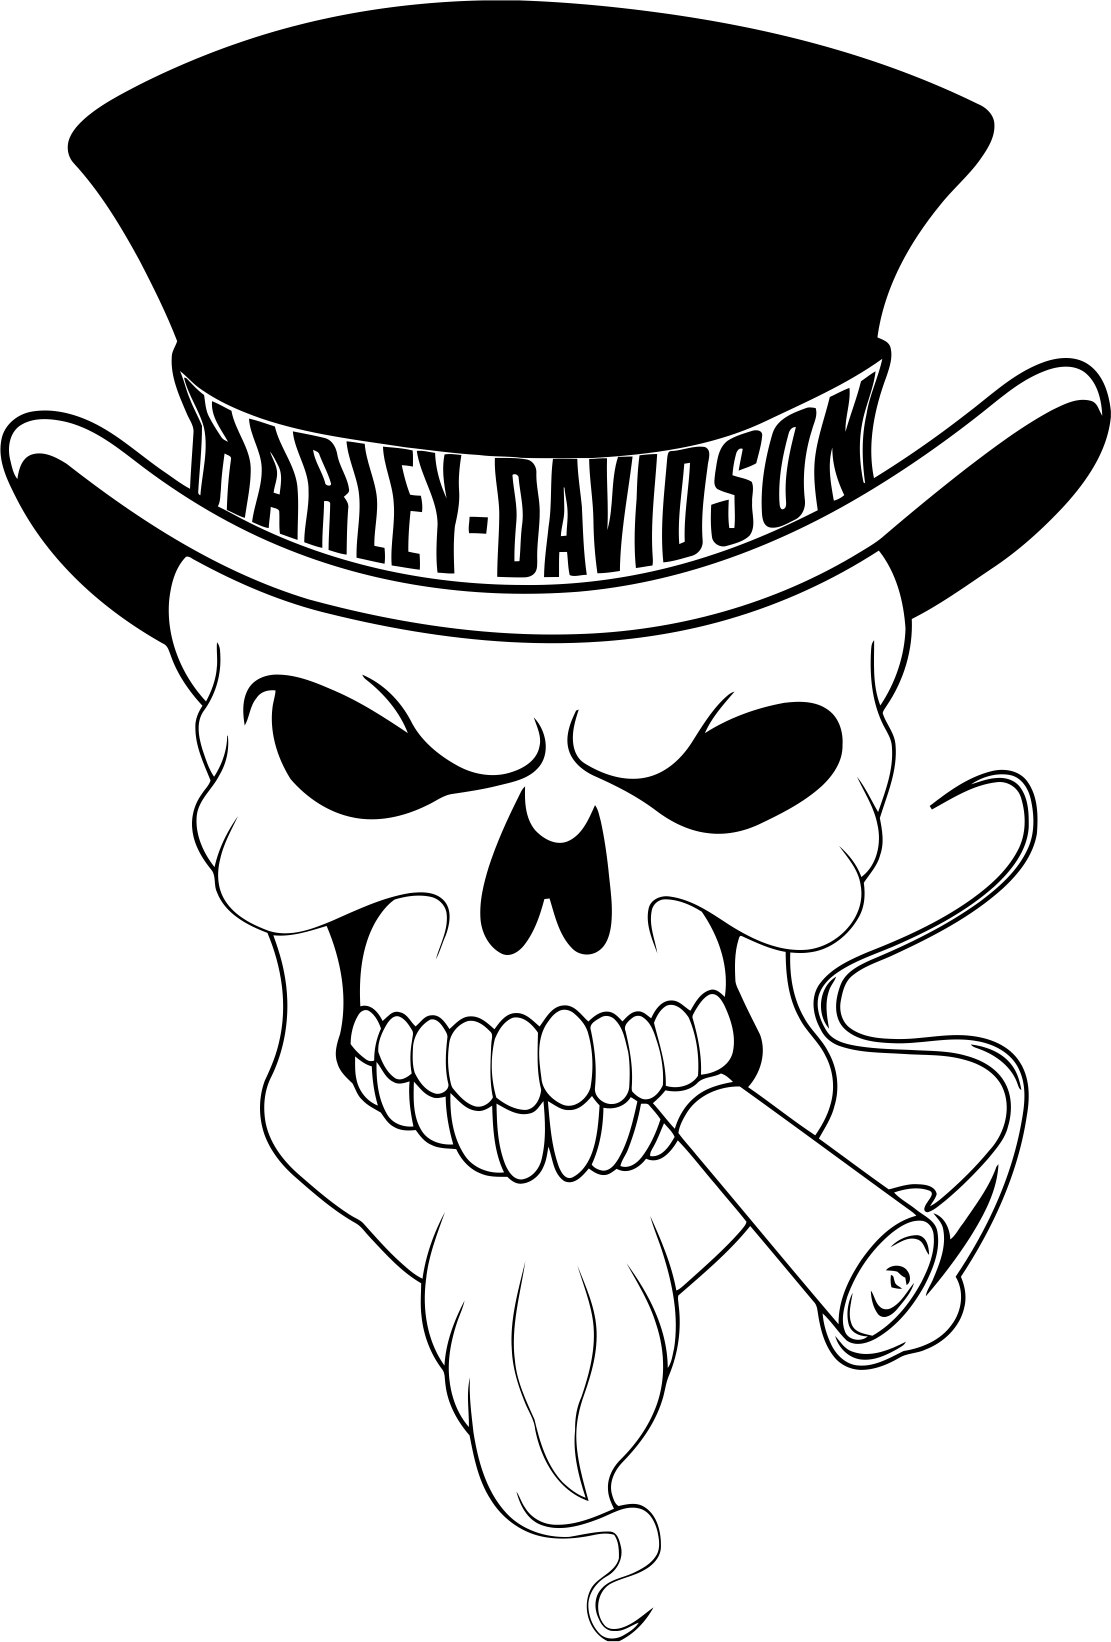 Вектор черепа Harley Davidson